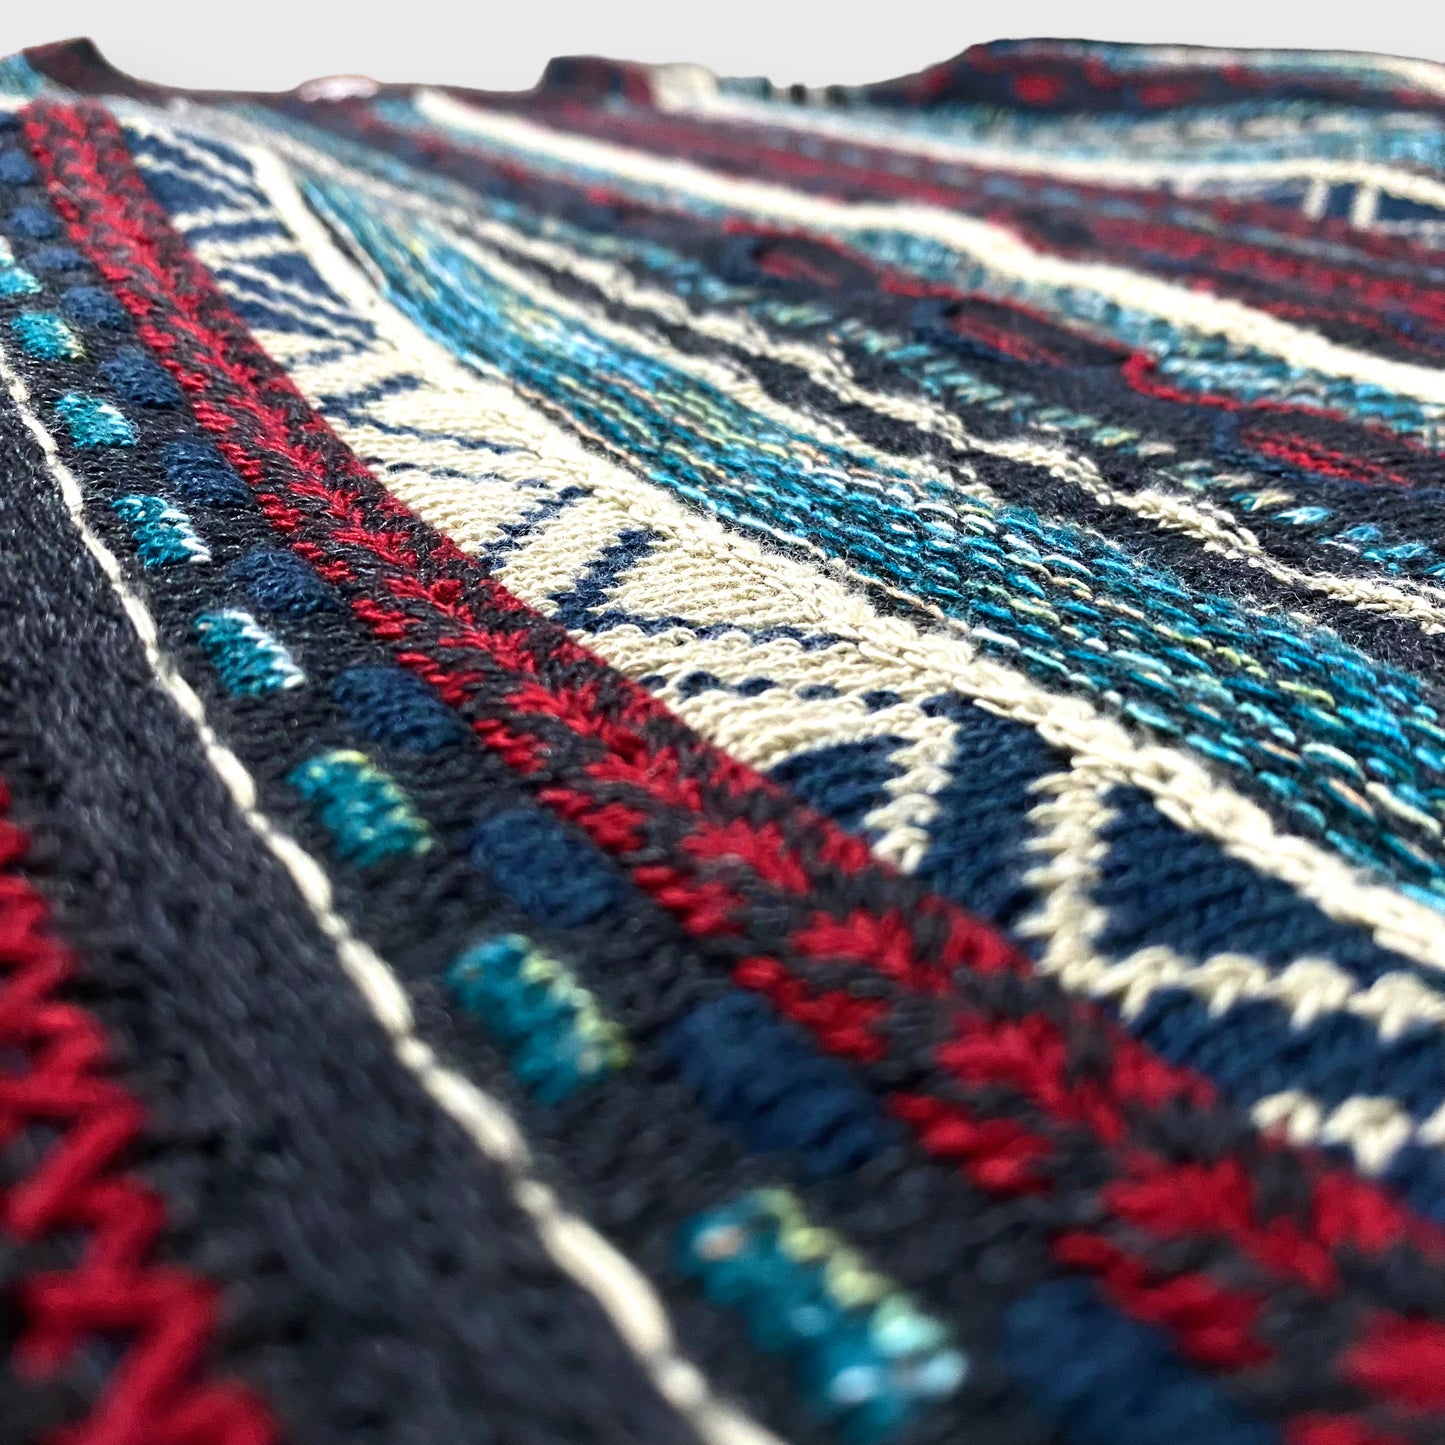 Stripe pattern 3D knit sweater